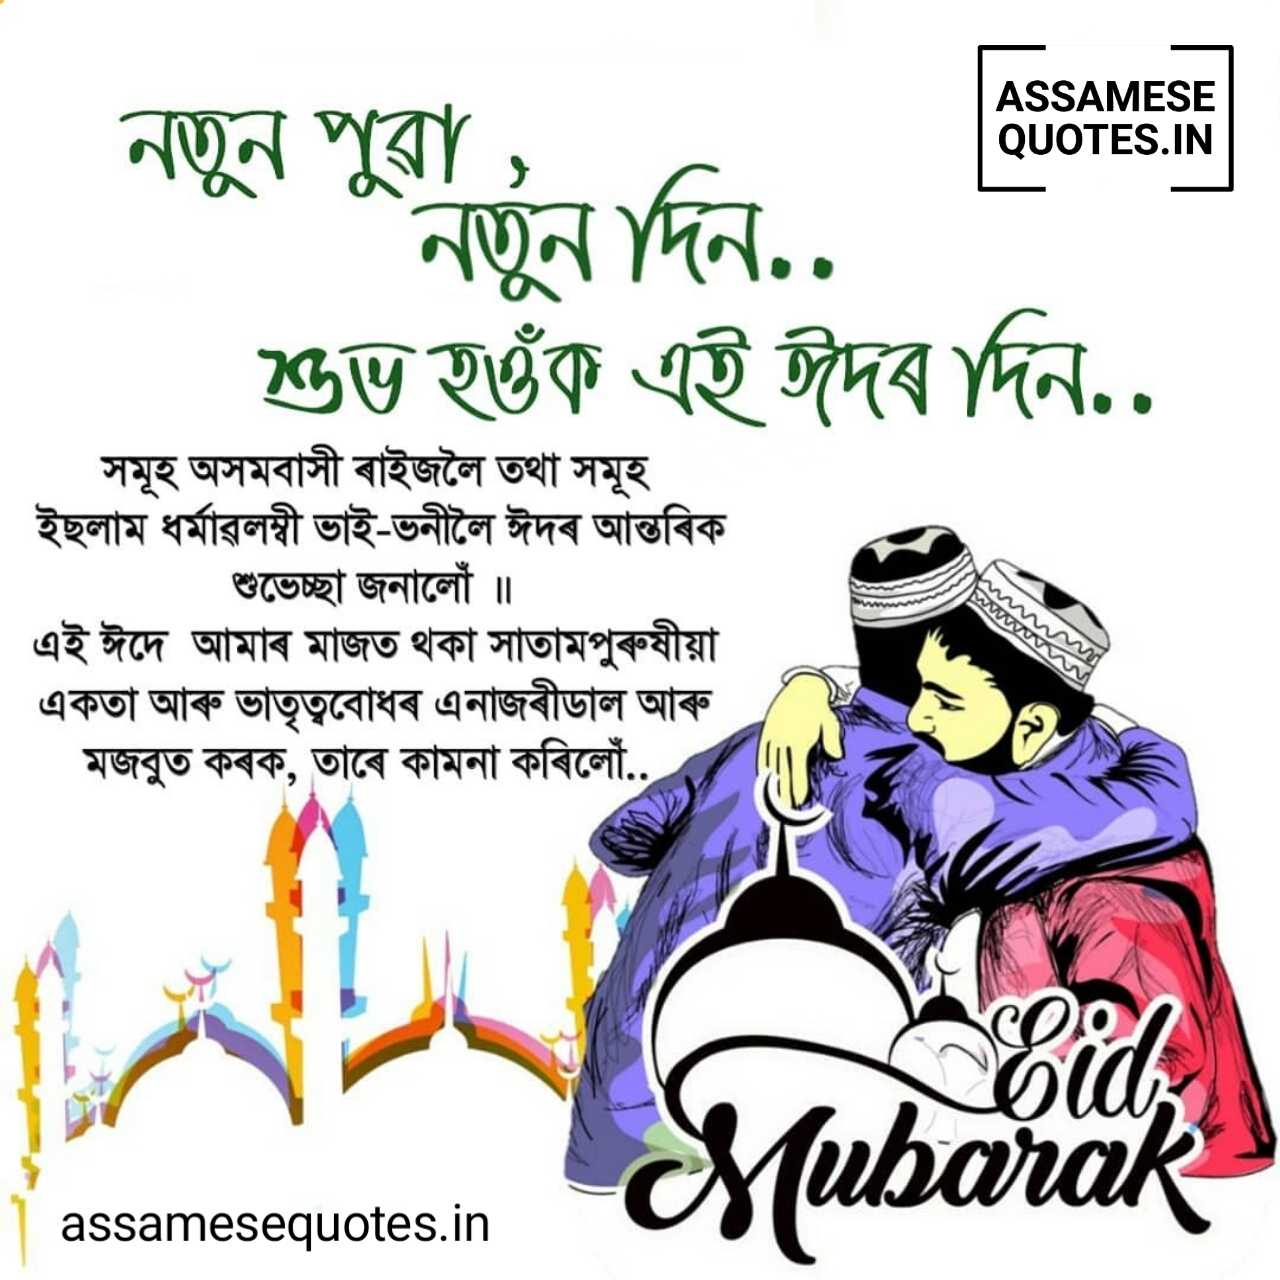 Eid Mubarak Image in Assamese | Eid Mubarak Assamese Shayari, Photo, Wish, SMS